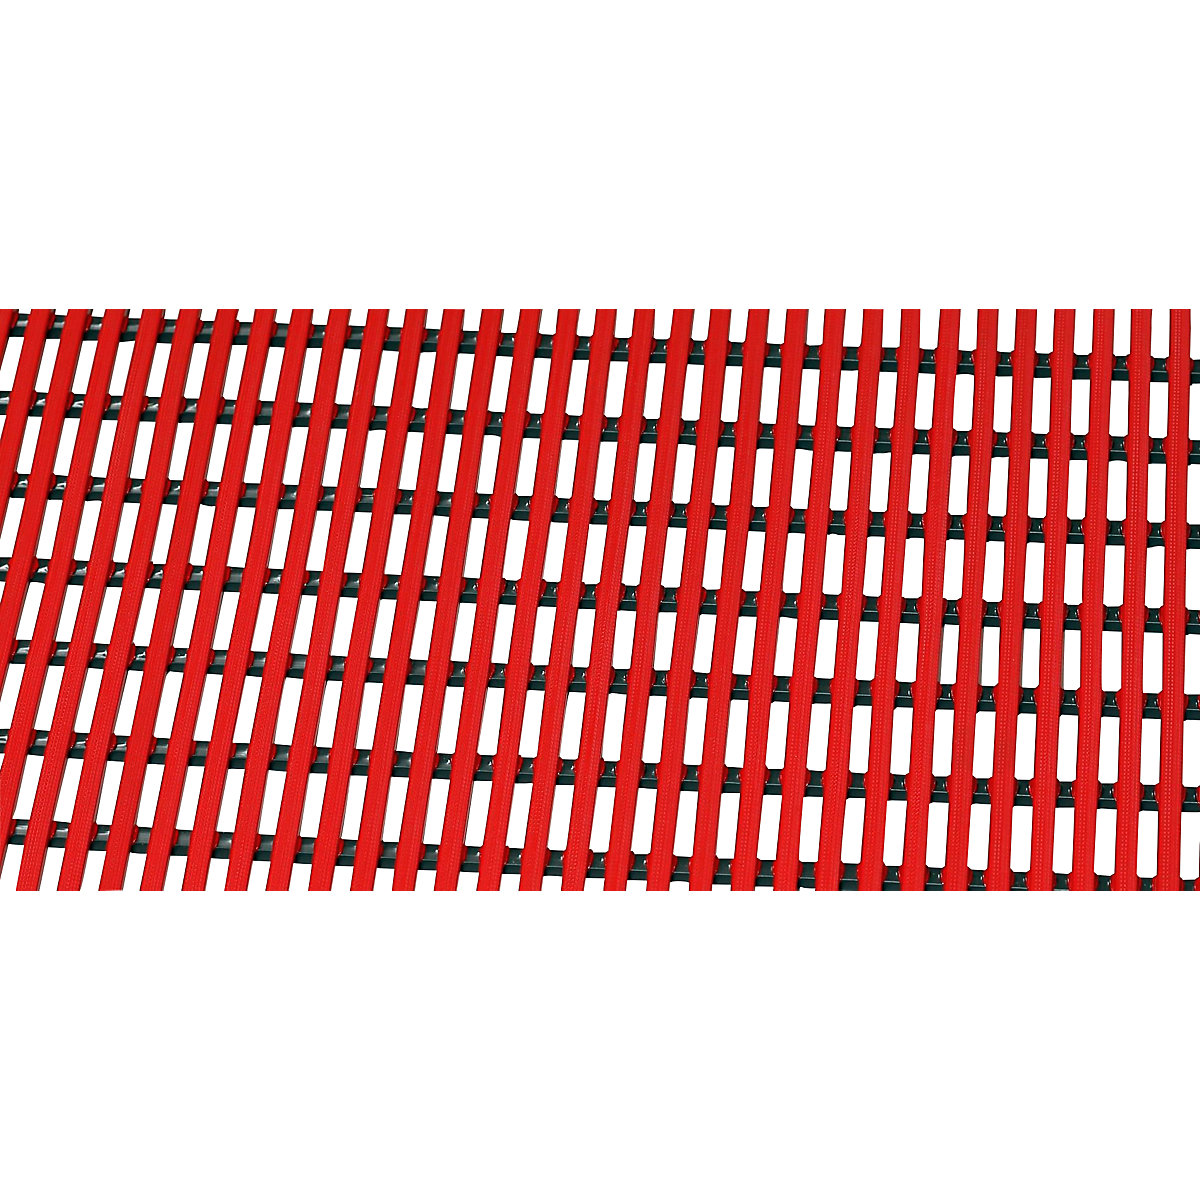 Bodenmatte für Dusch- und Umkleideraum, Weich-PVC, pro lfd. m, Breite 600 mm, rot